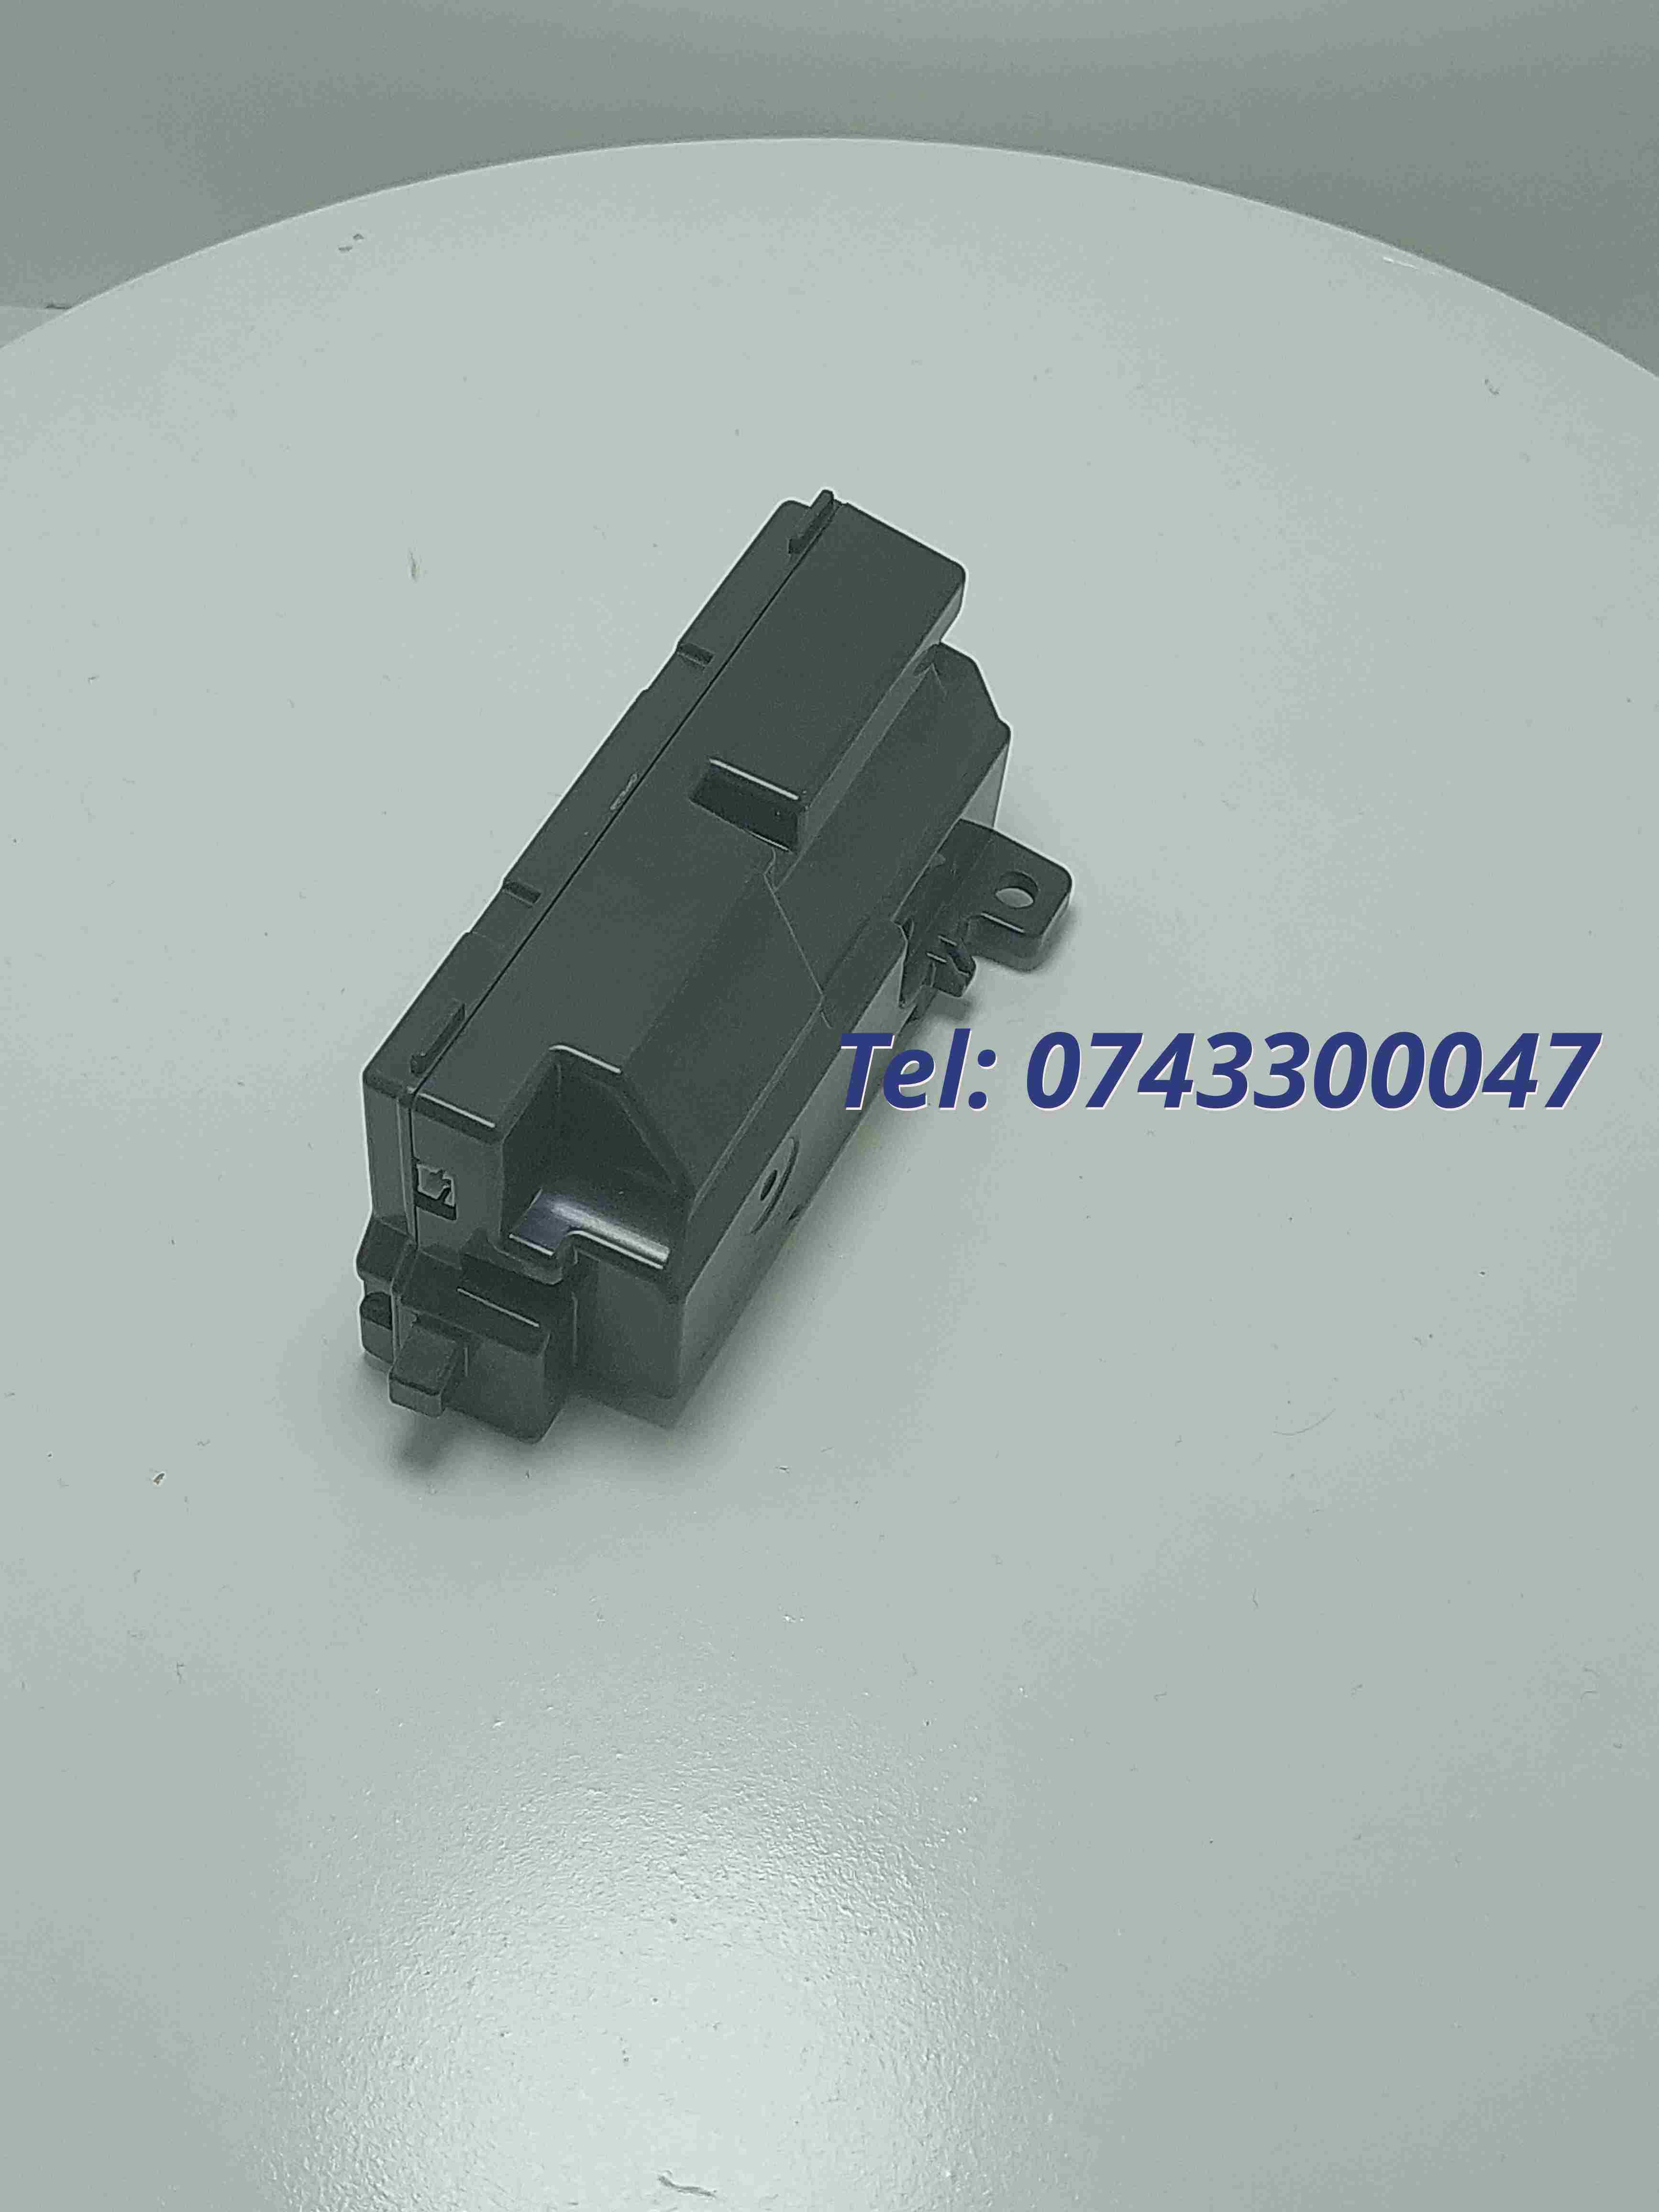 Sursa Multifunctionala Printer Canon K30352 Mg2922  Mg2920  Mg2520